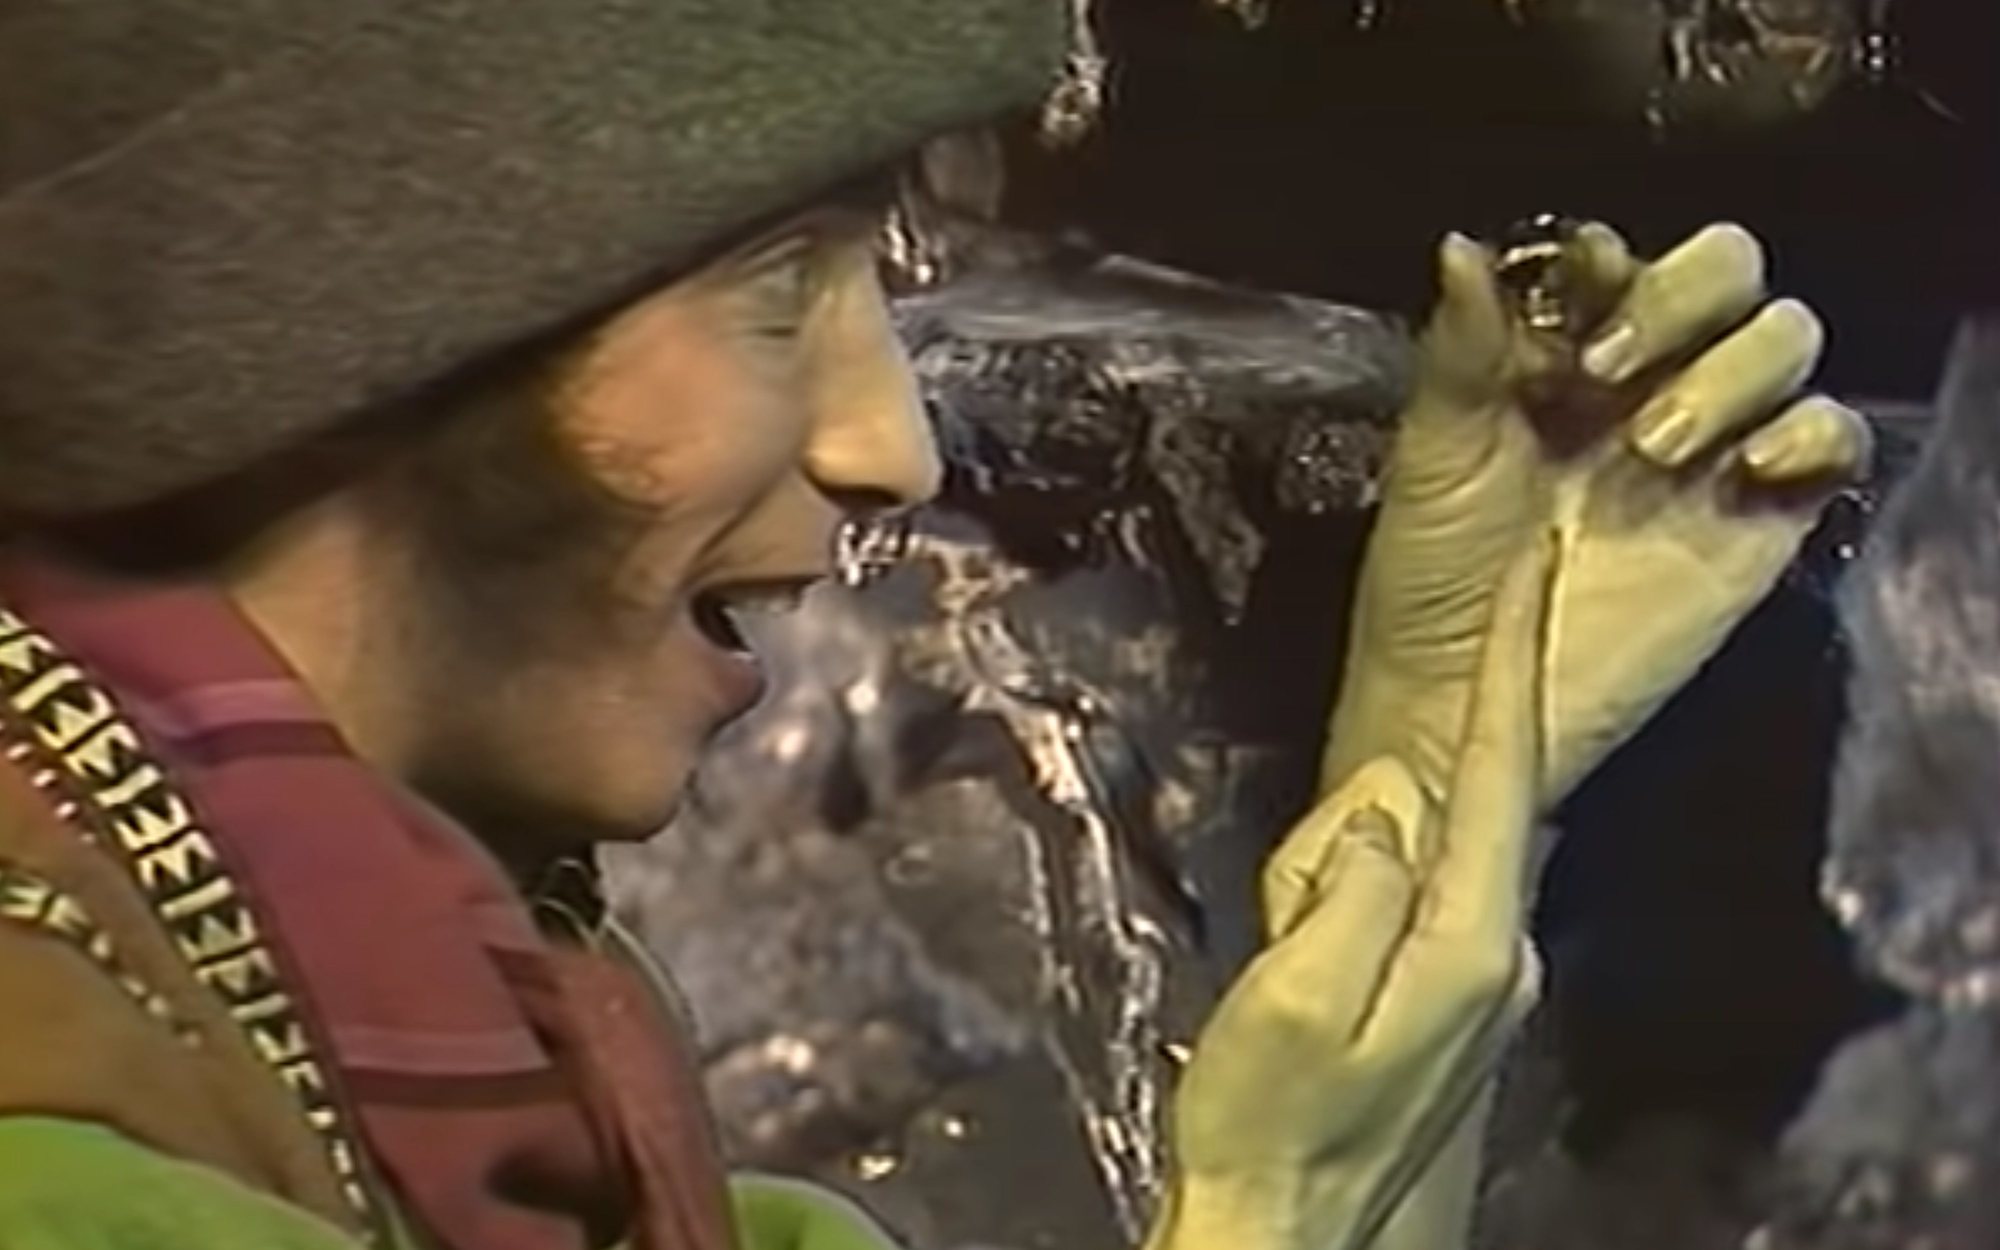 Sale a la luz la adaptación soviética de "El Señor de los Anillos" 30 años después